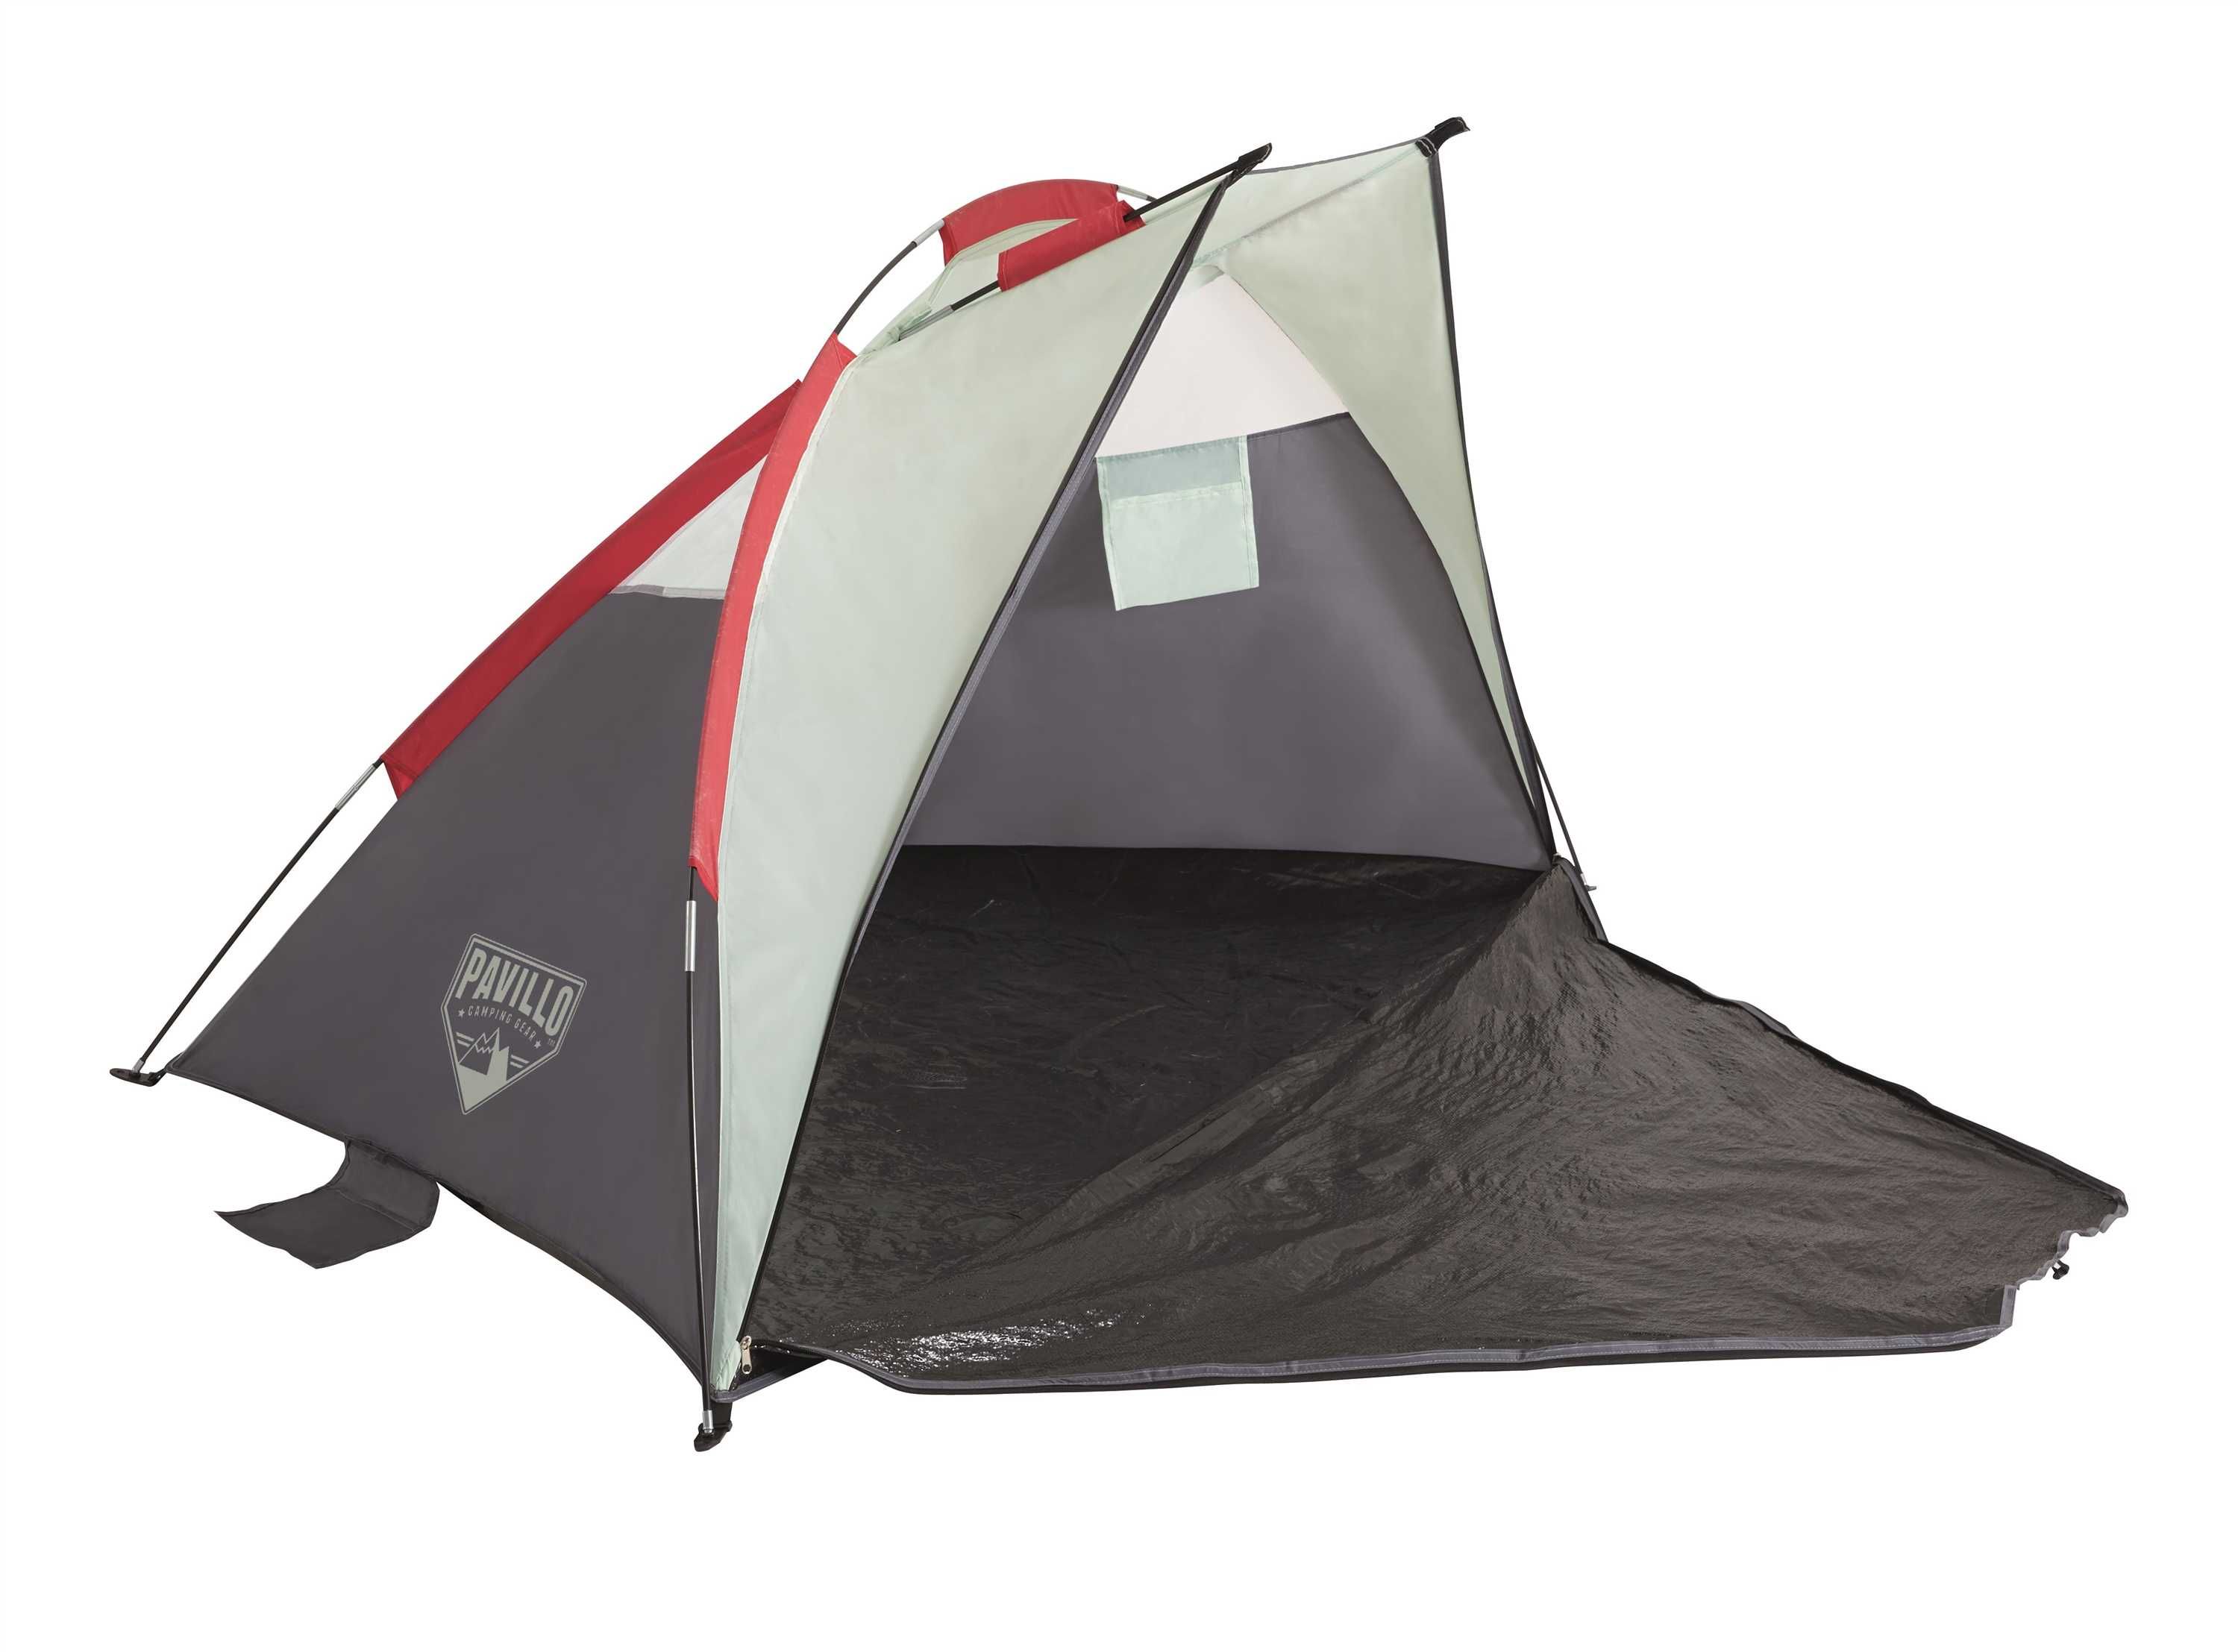 Lekki 1,3 kg namiot 2-osobowy łatwy montaż 49x8 cm